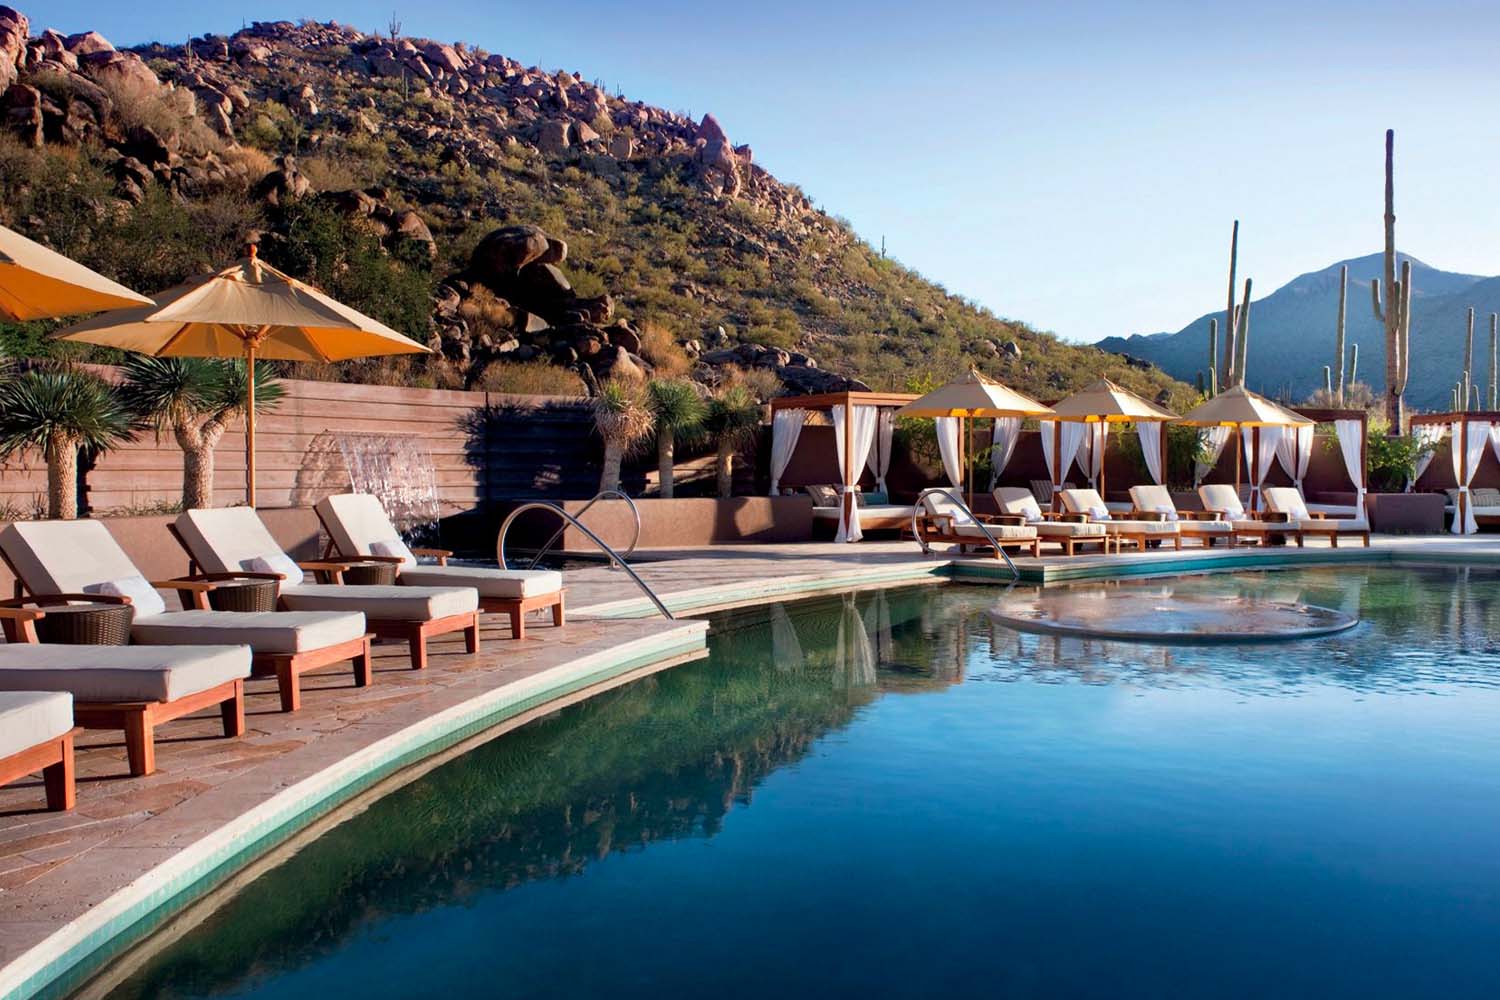 The pool at The Ritz-Carlton, Dove Mountain